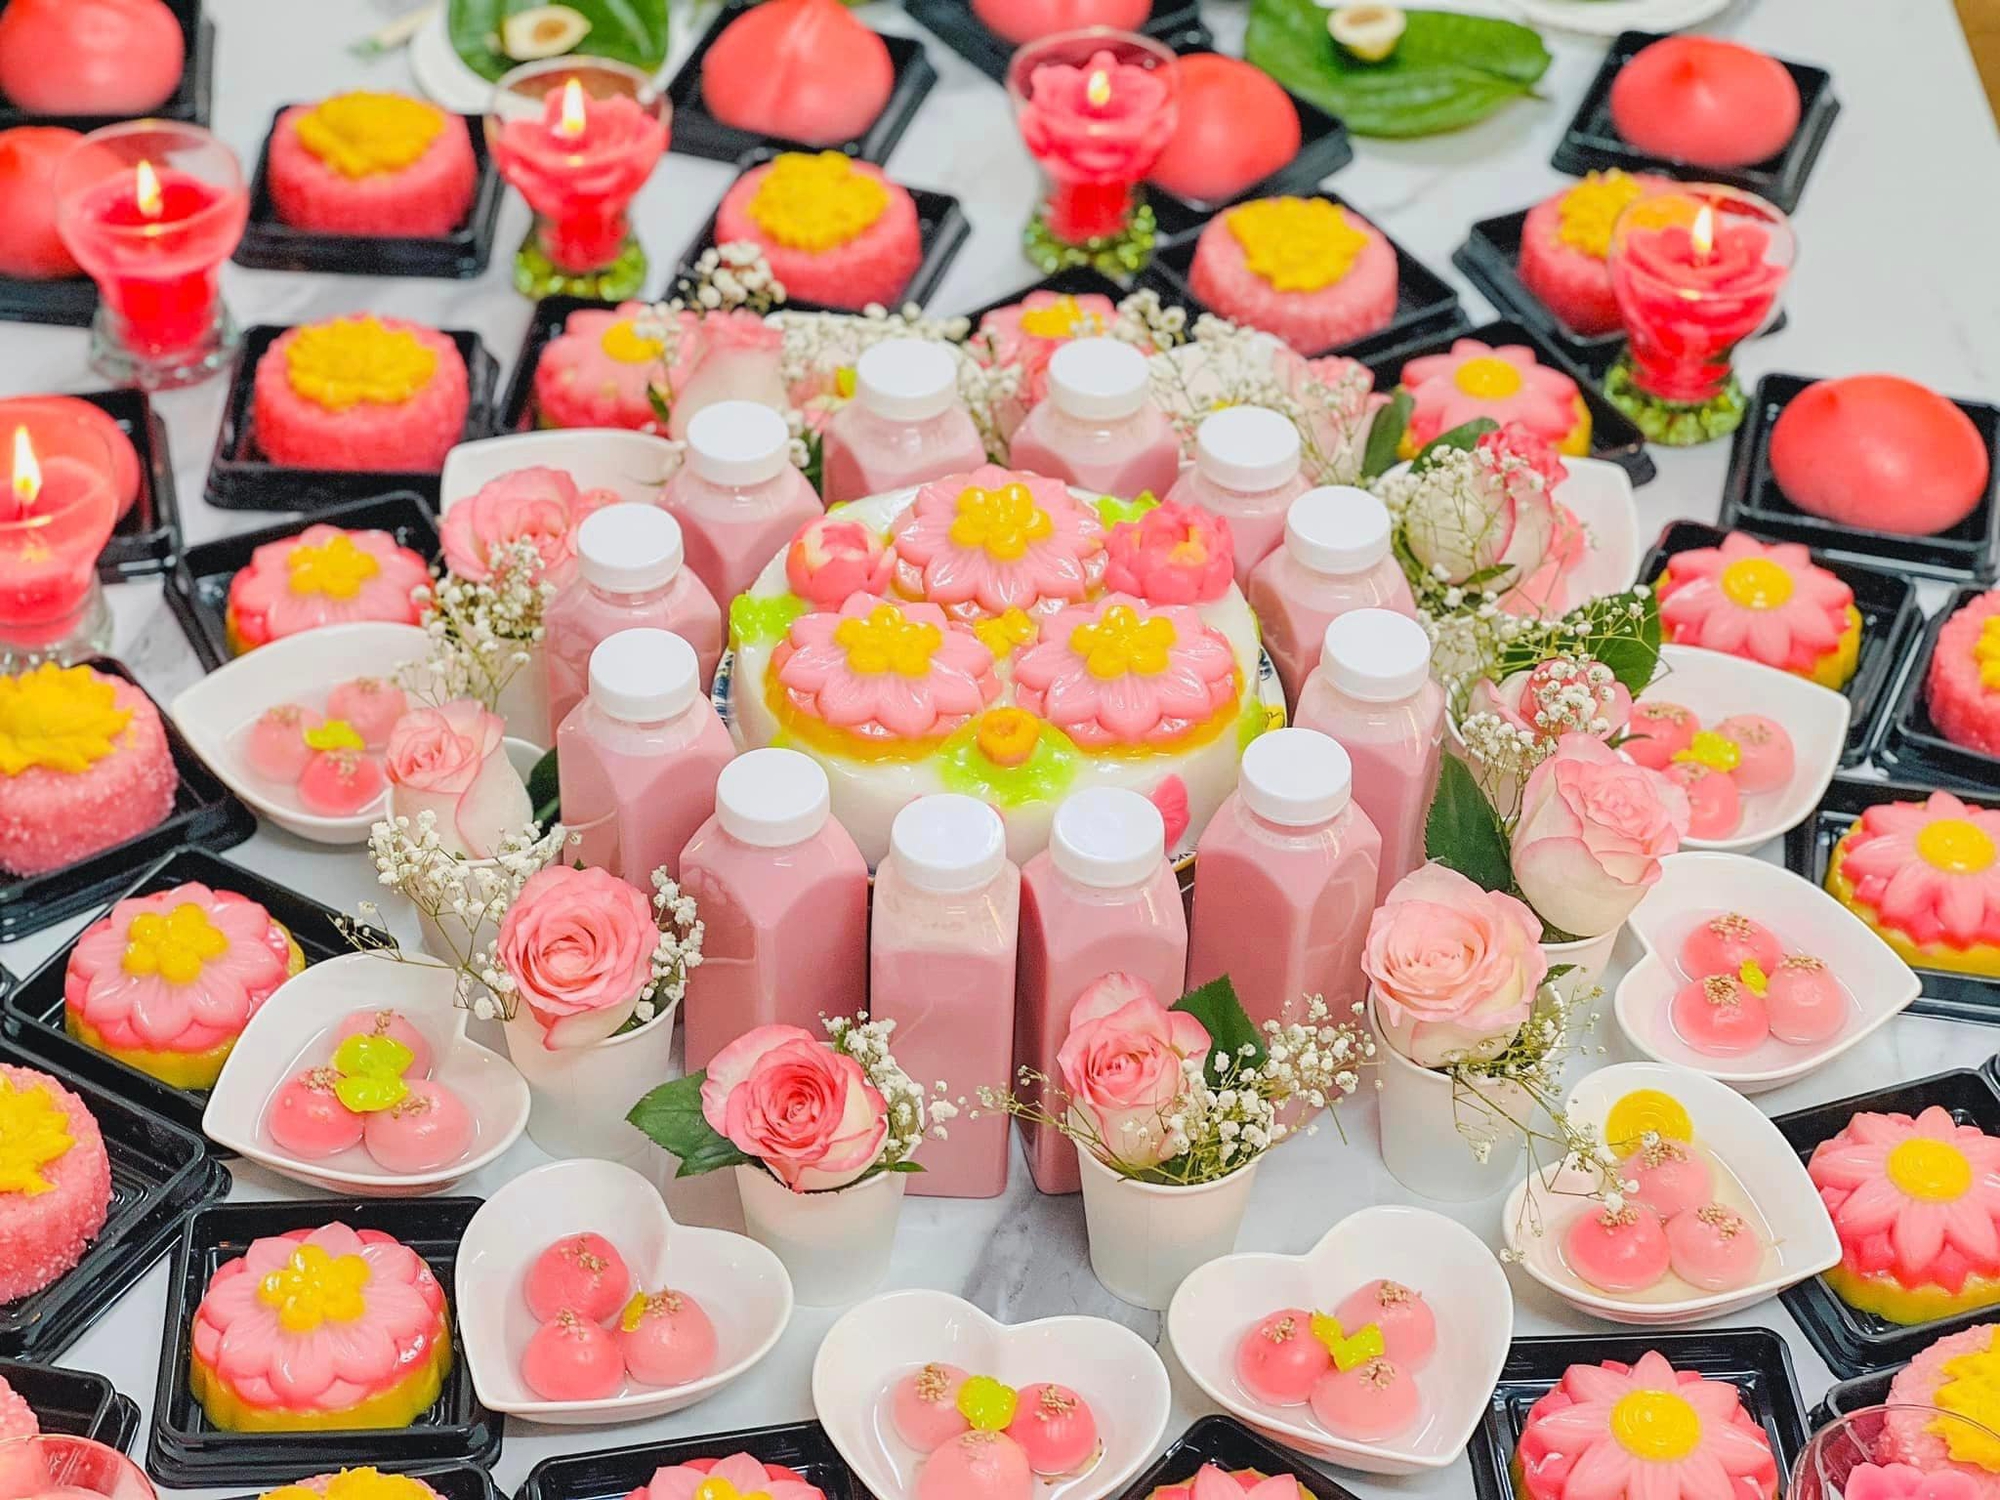 Bữa tiệc thôi nôi trăm hoa đua nở ngập sắc hồng mẹ dành cho con gái - Ảnh 1.